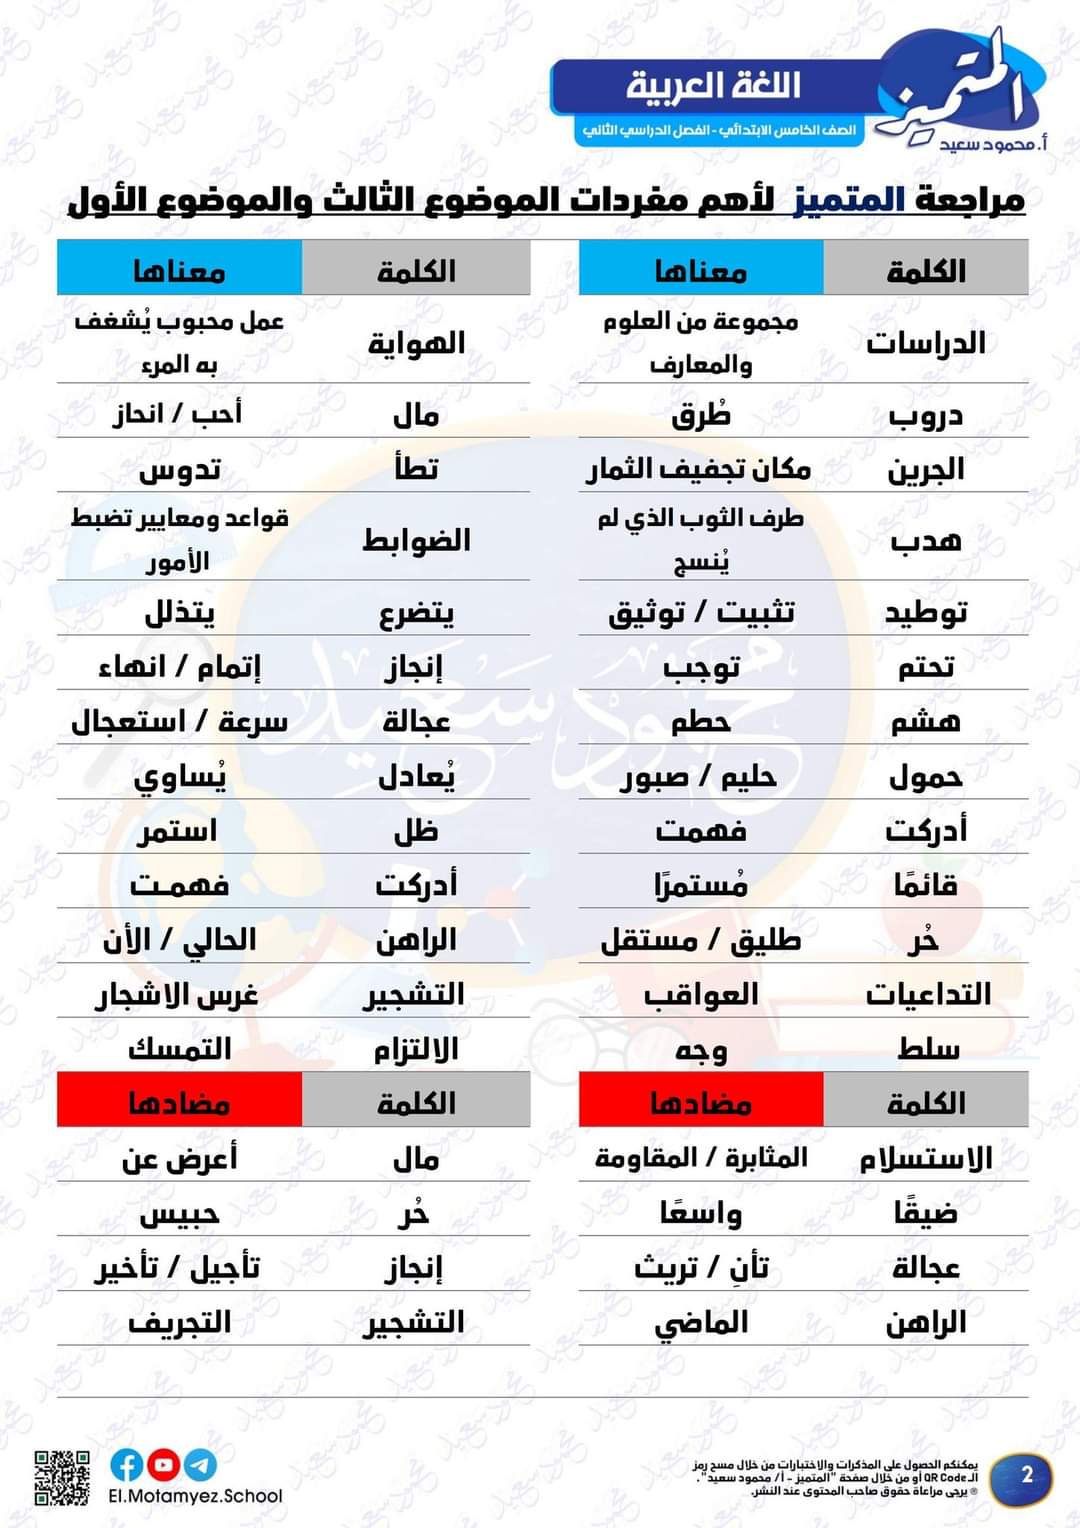 مراجعة المتميز مقرر مارس لغة عربية الصف الخامس الابتدائي - تحميل مذكرات المتميز